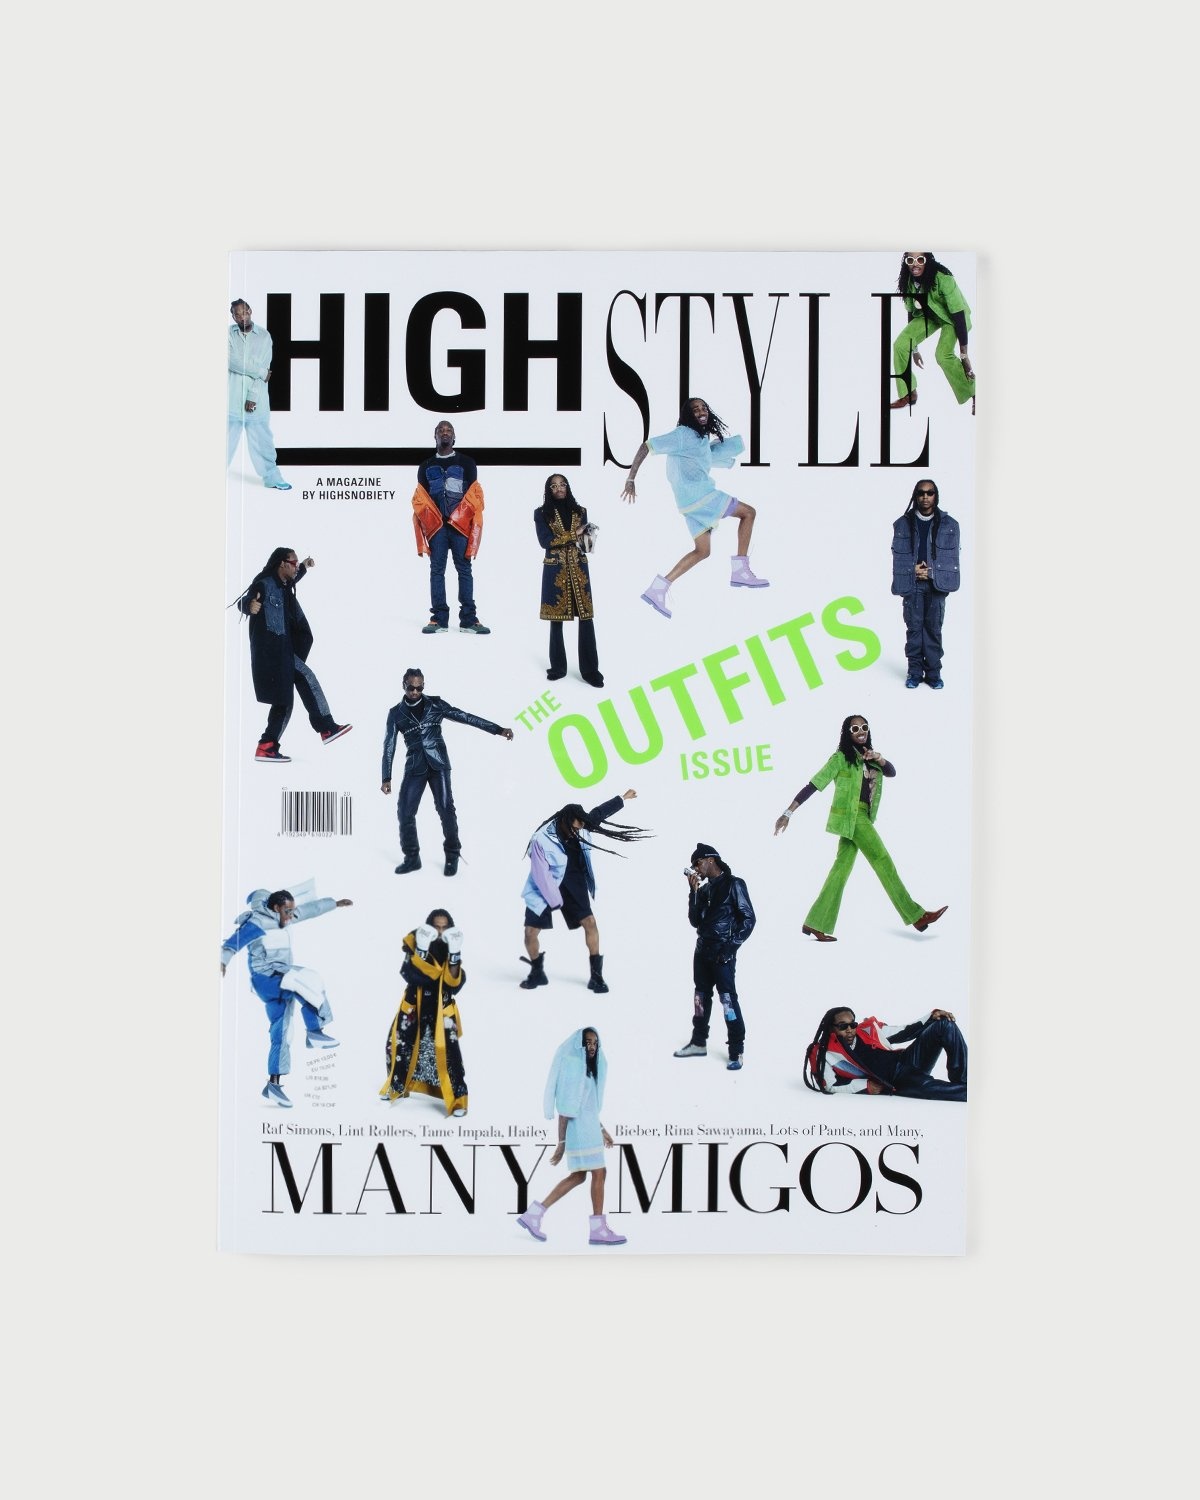 Highsnobiety – HIGHStyle - A Magazine by Highsnobiety - Magazines - Multi - Image 1